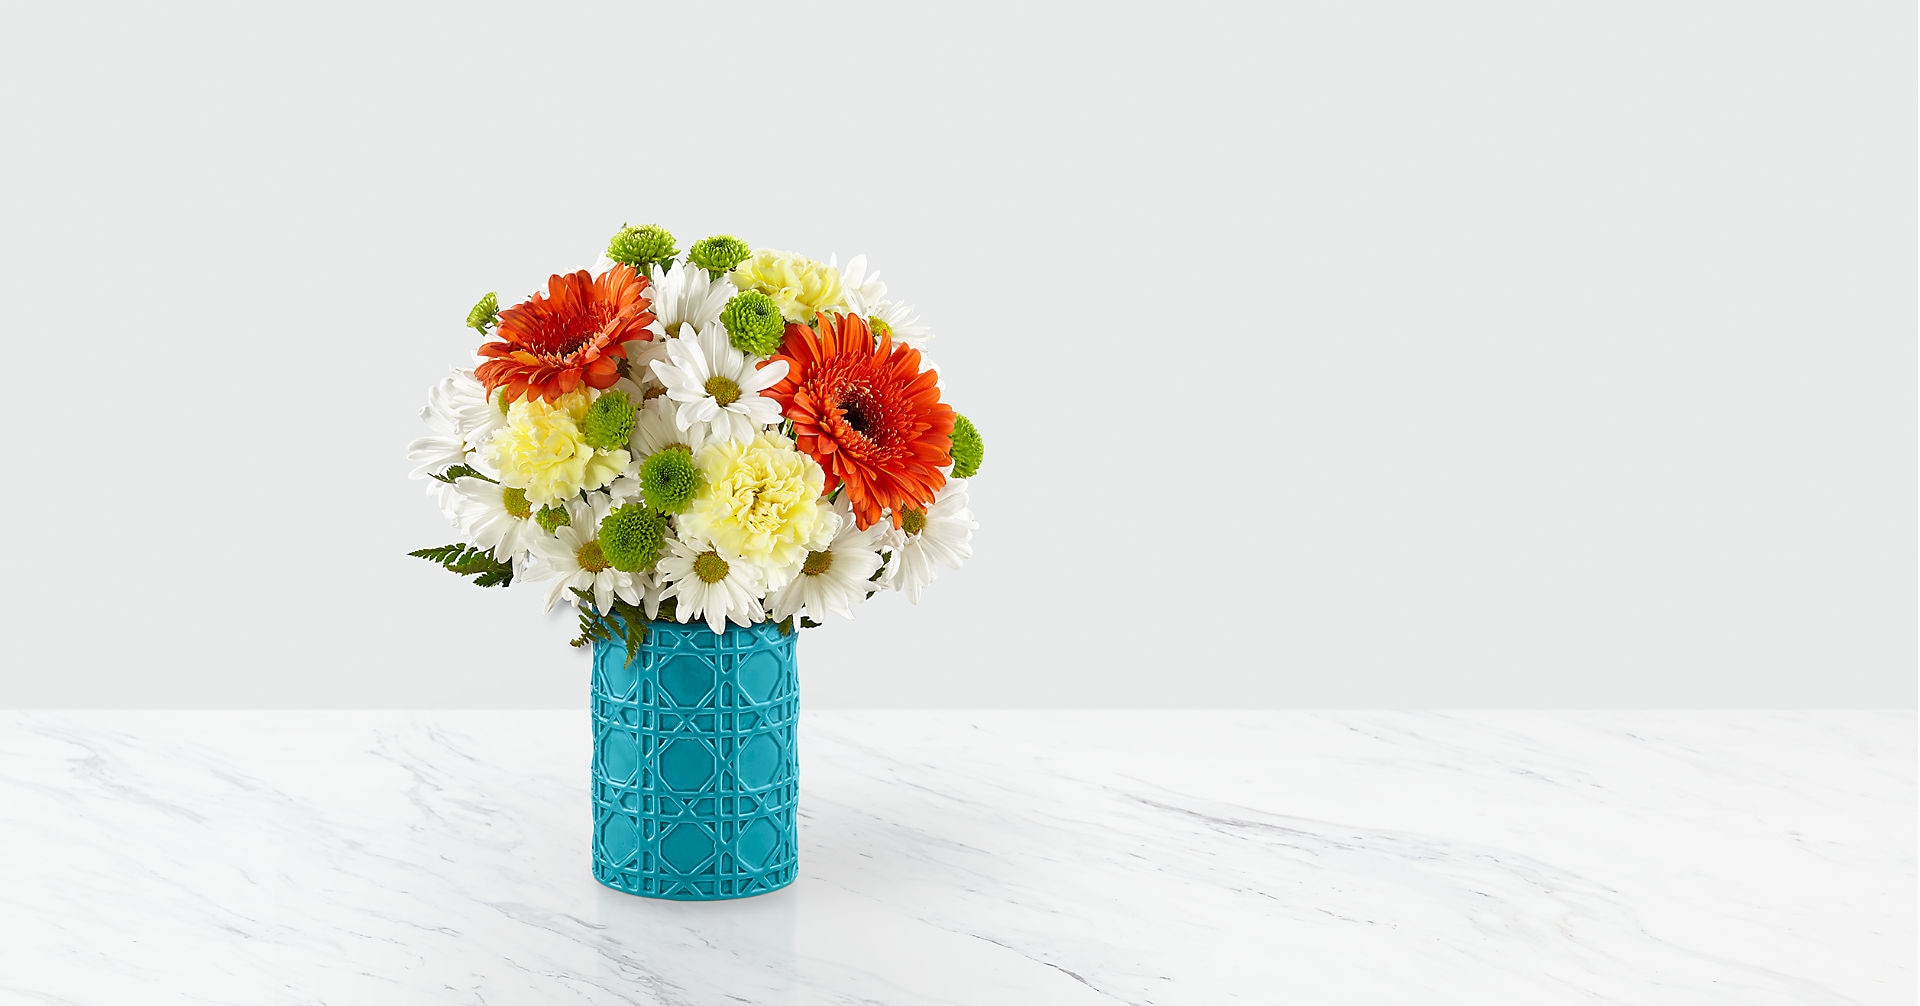 Happy Day Birthday™ Bouquet by Hallmark